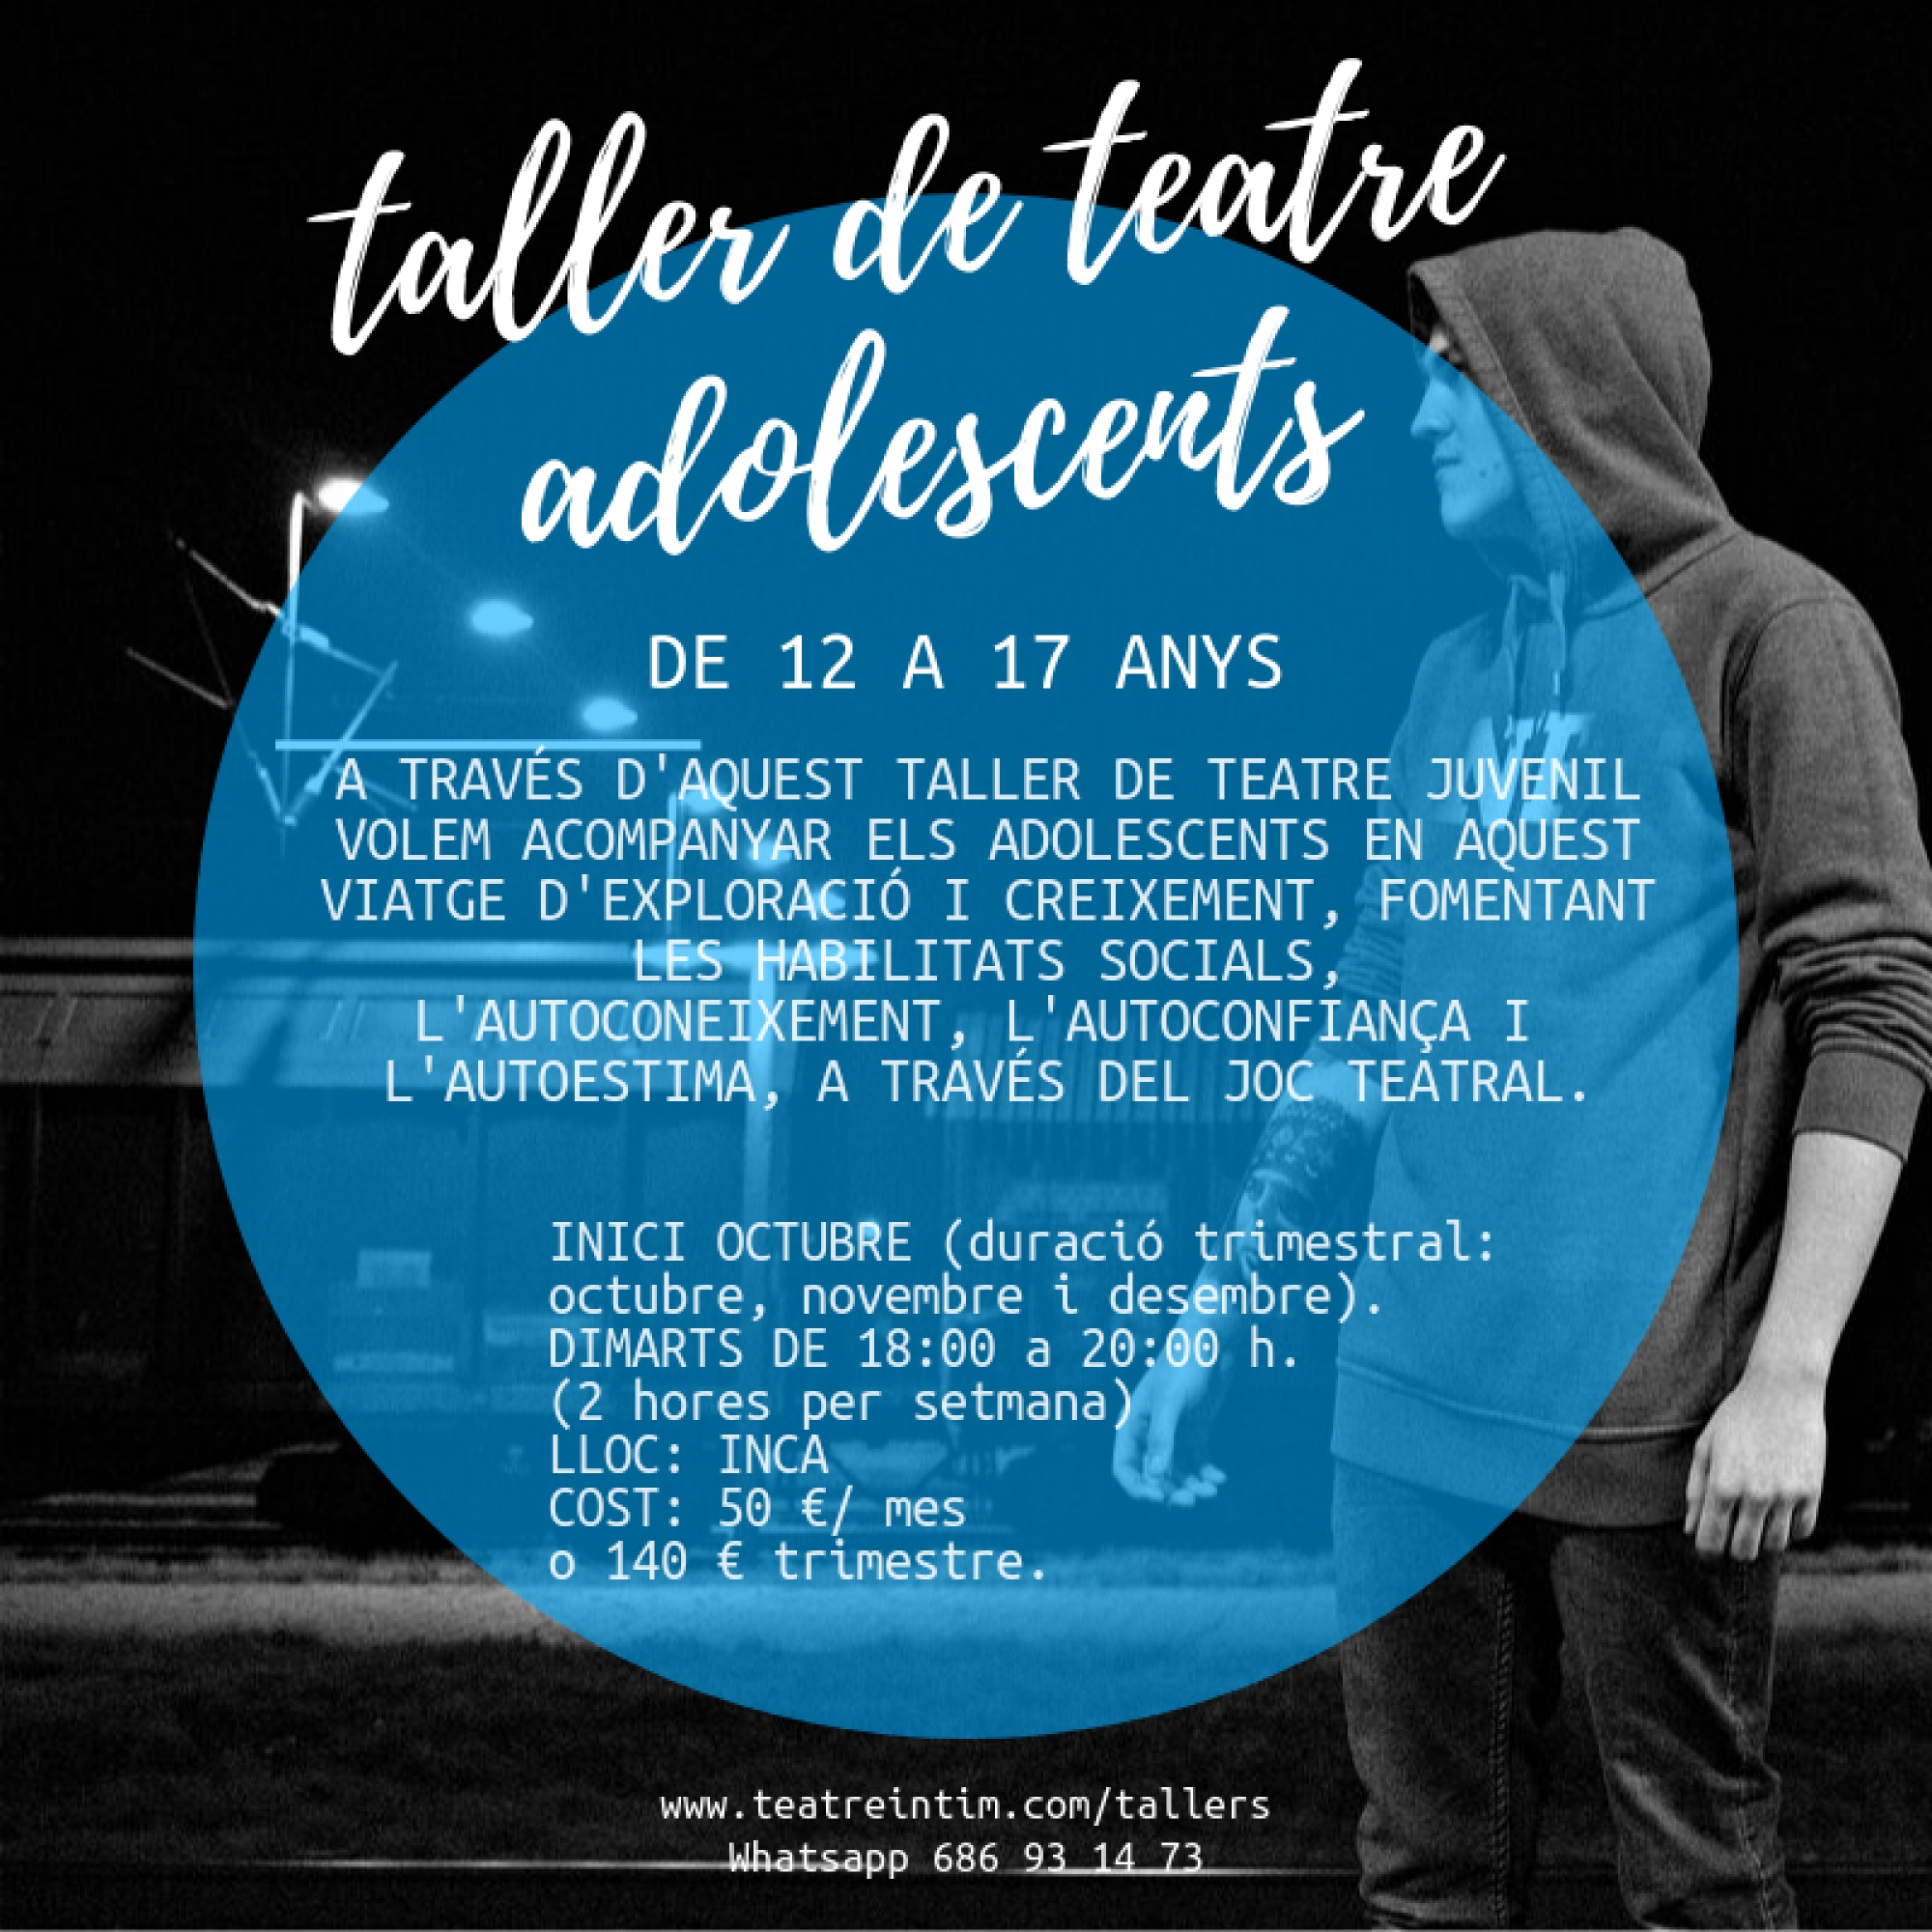 Tallers de teatre per adolescents